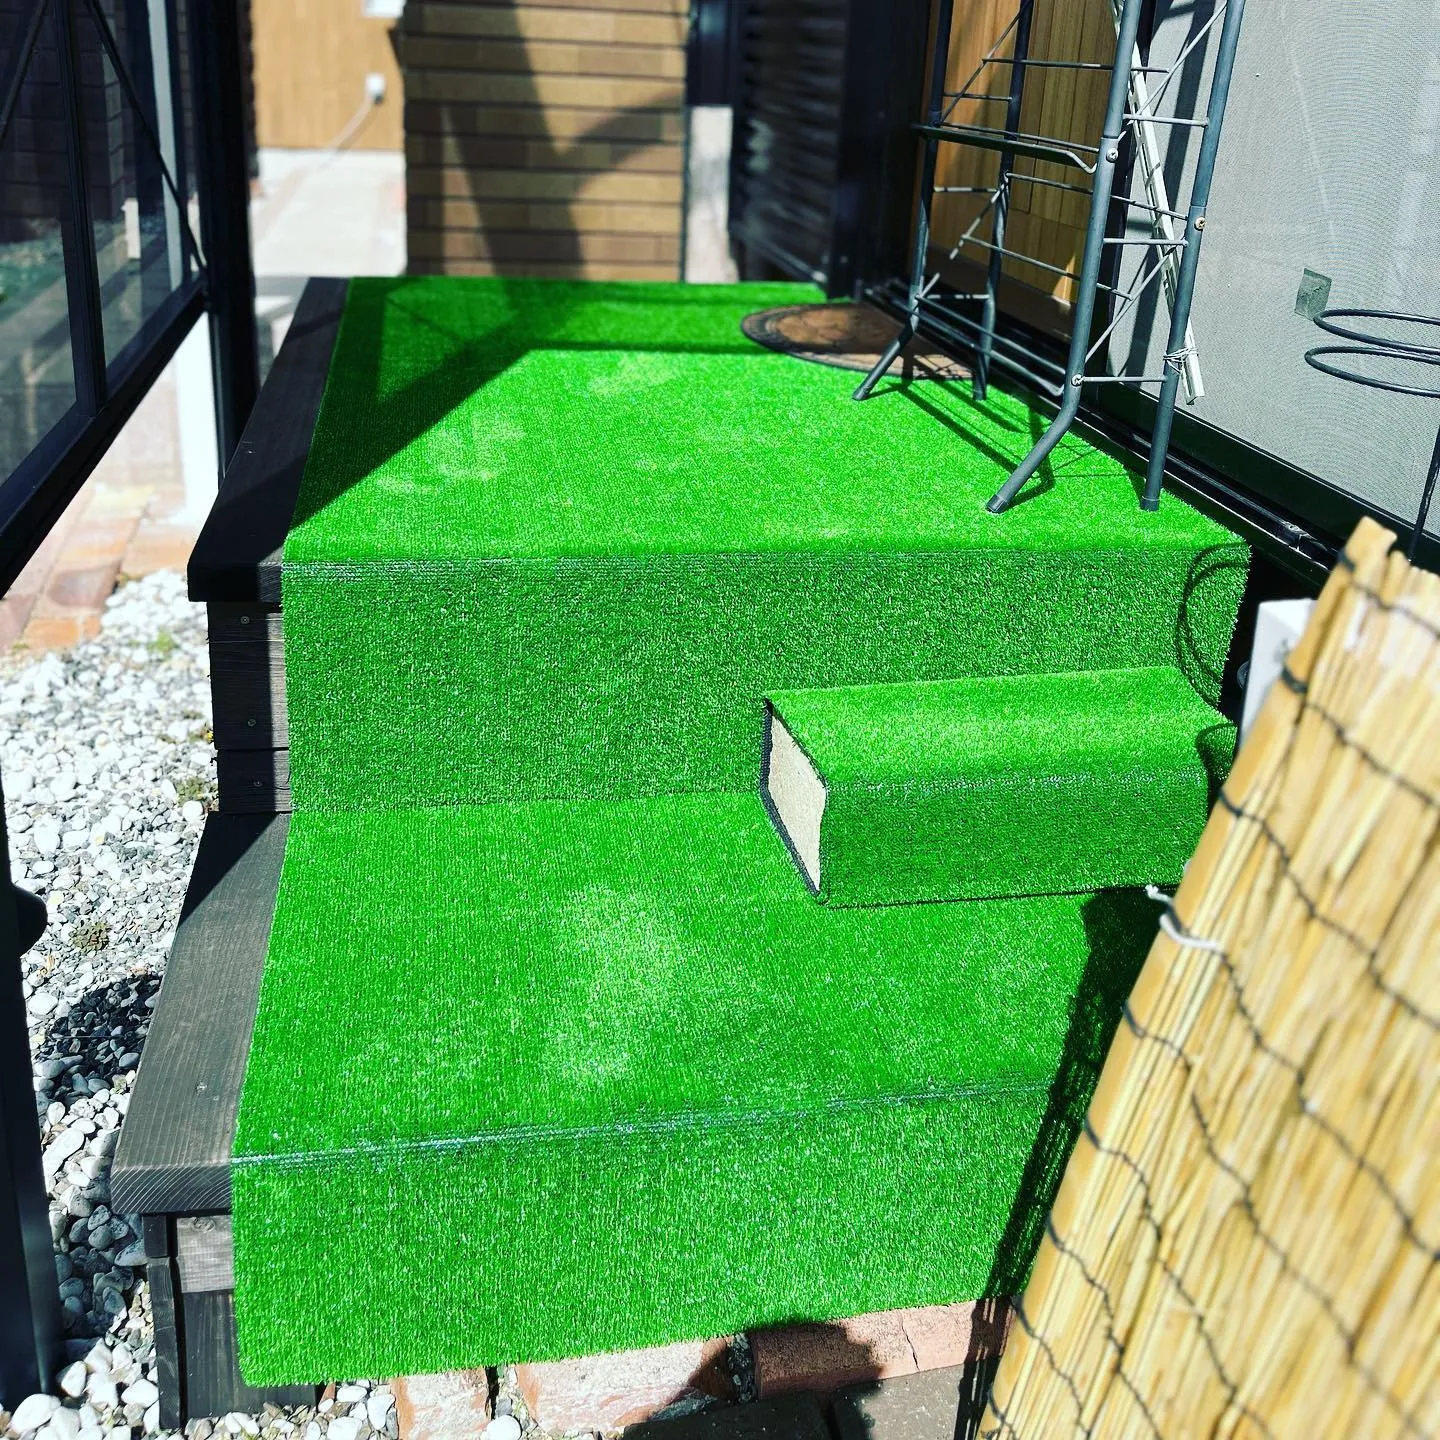 整体玄関口の緑シート🟢を新調しましたあ✨